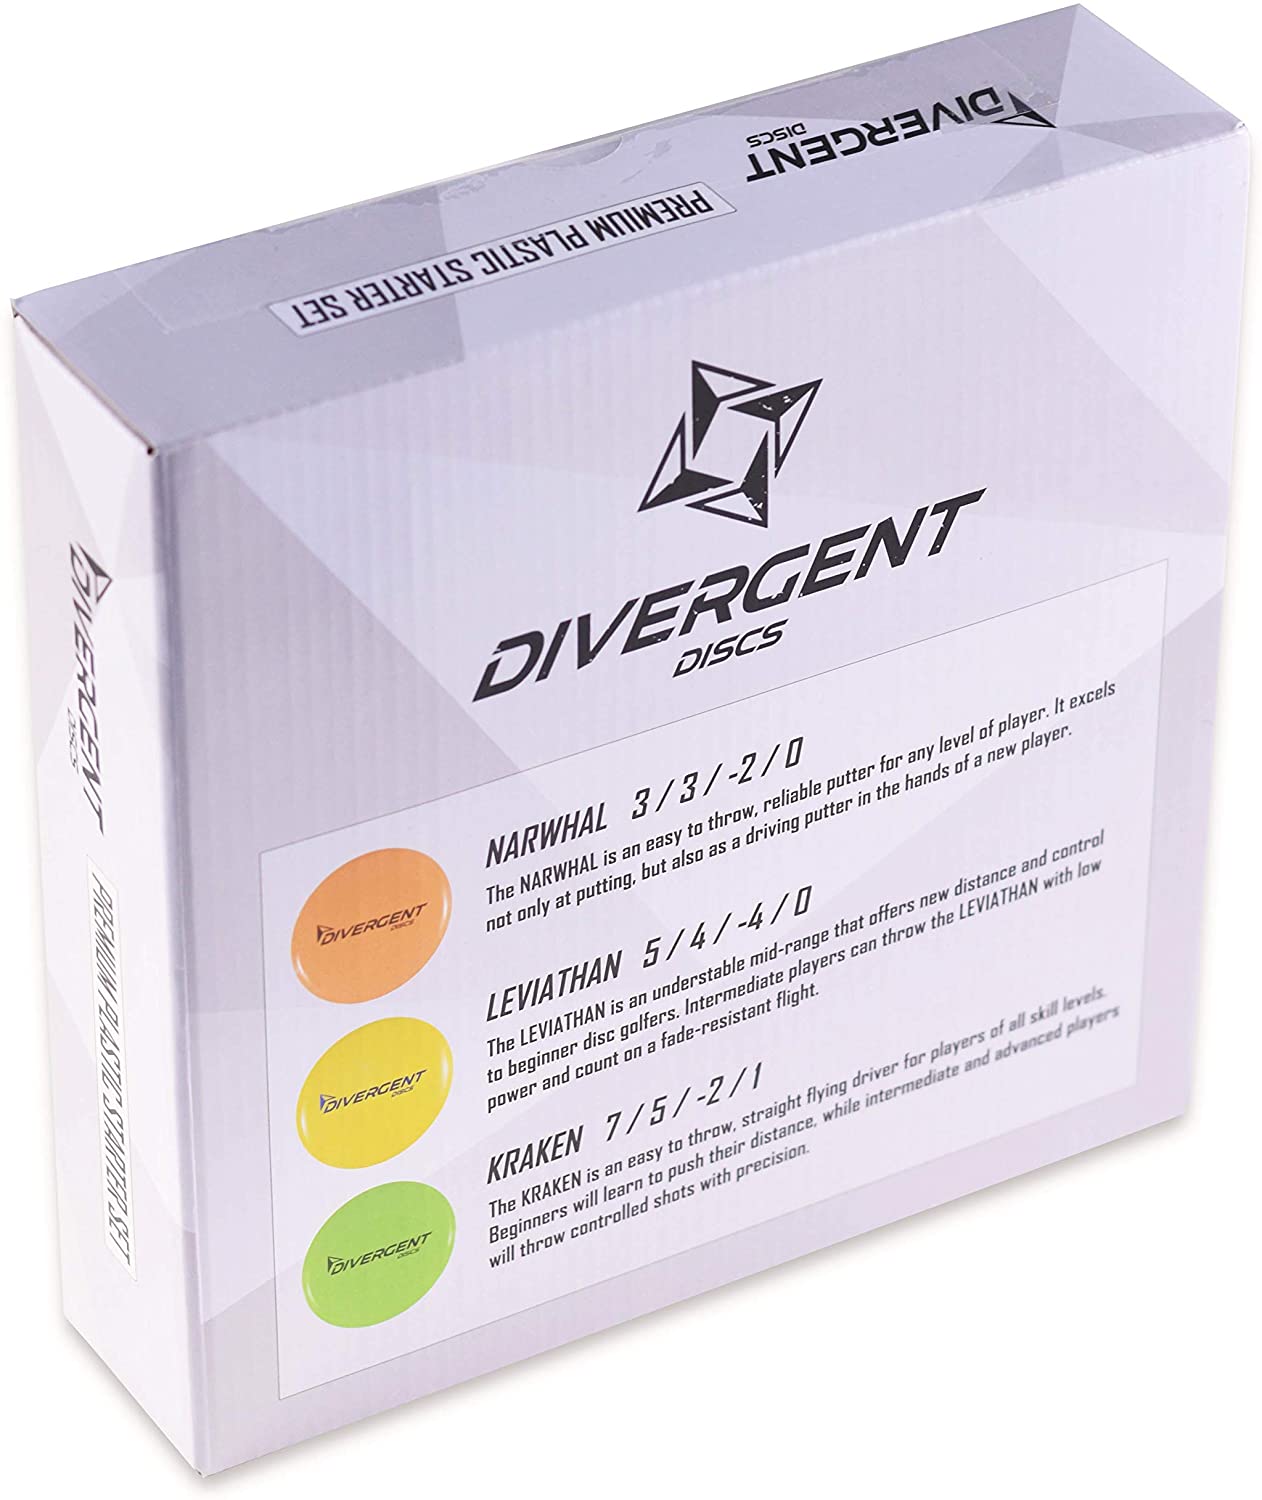 Divergent Sets ON Sale on Amazon.com